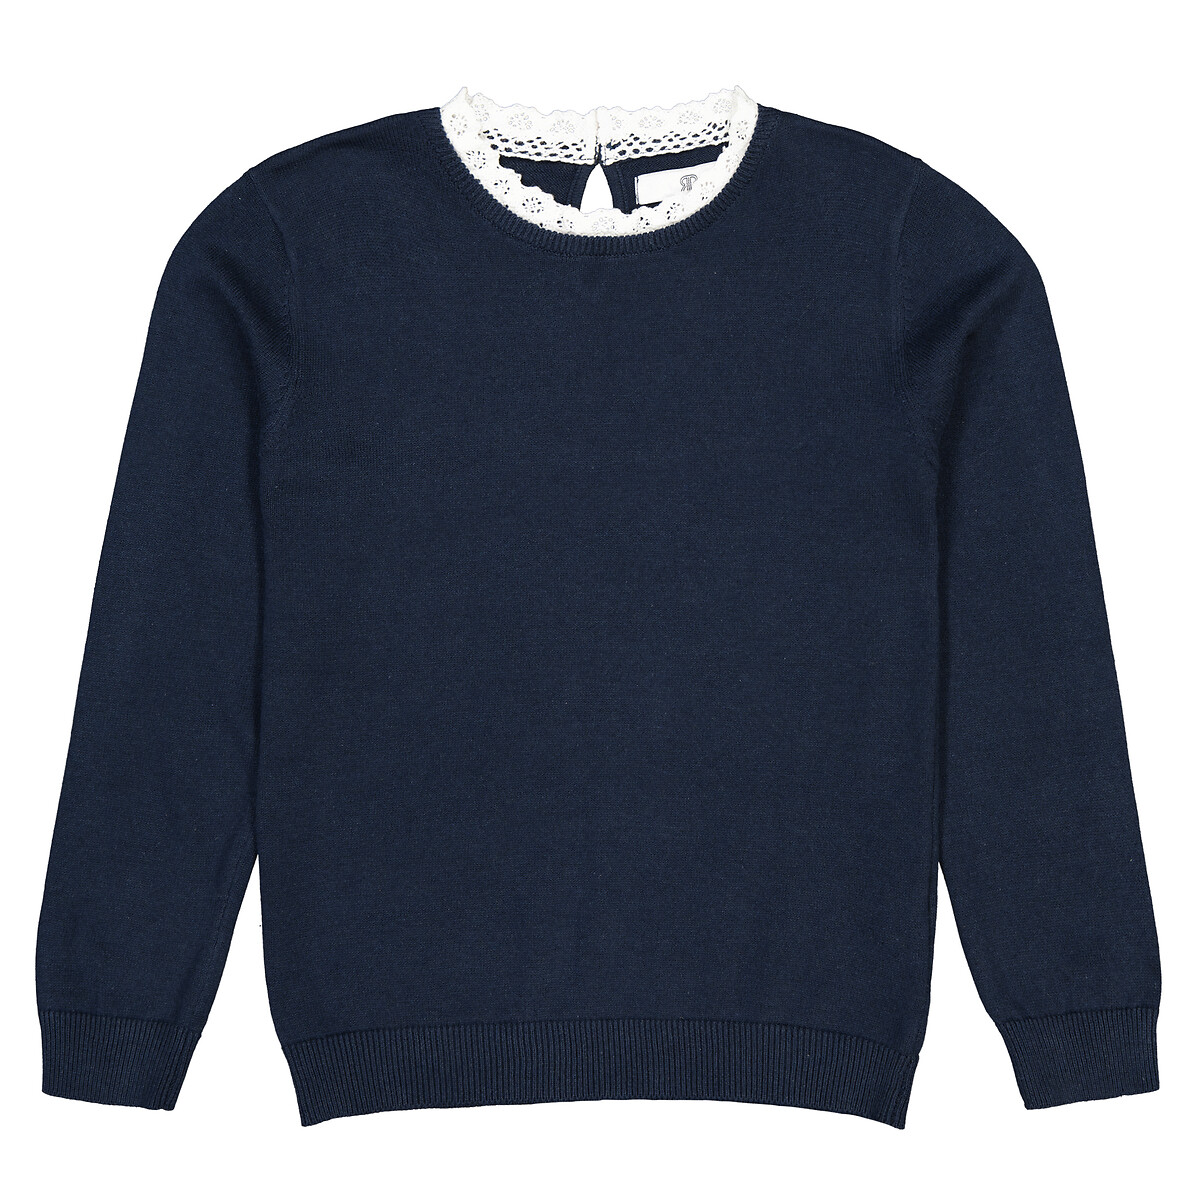 Пуловер Из тонкого трикотажа вырез с эффектом два в одном 5 лет - 108 см синий LaRedoute, размер 5 лет - 108 см - фото 3